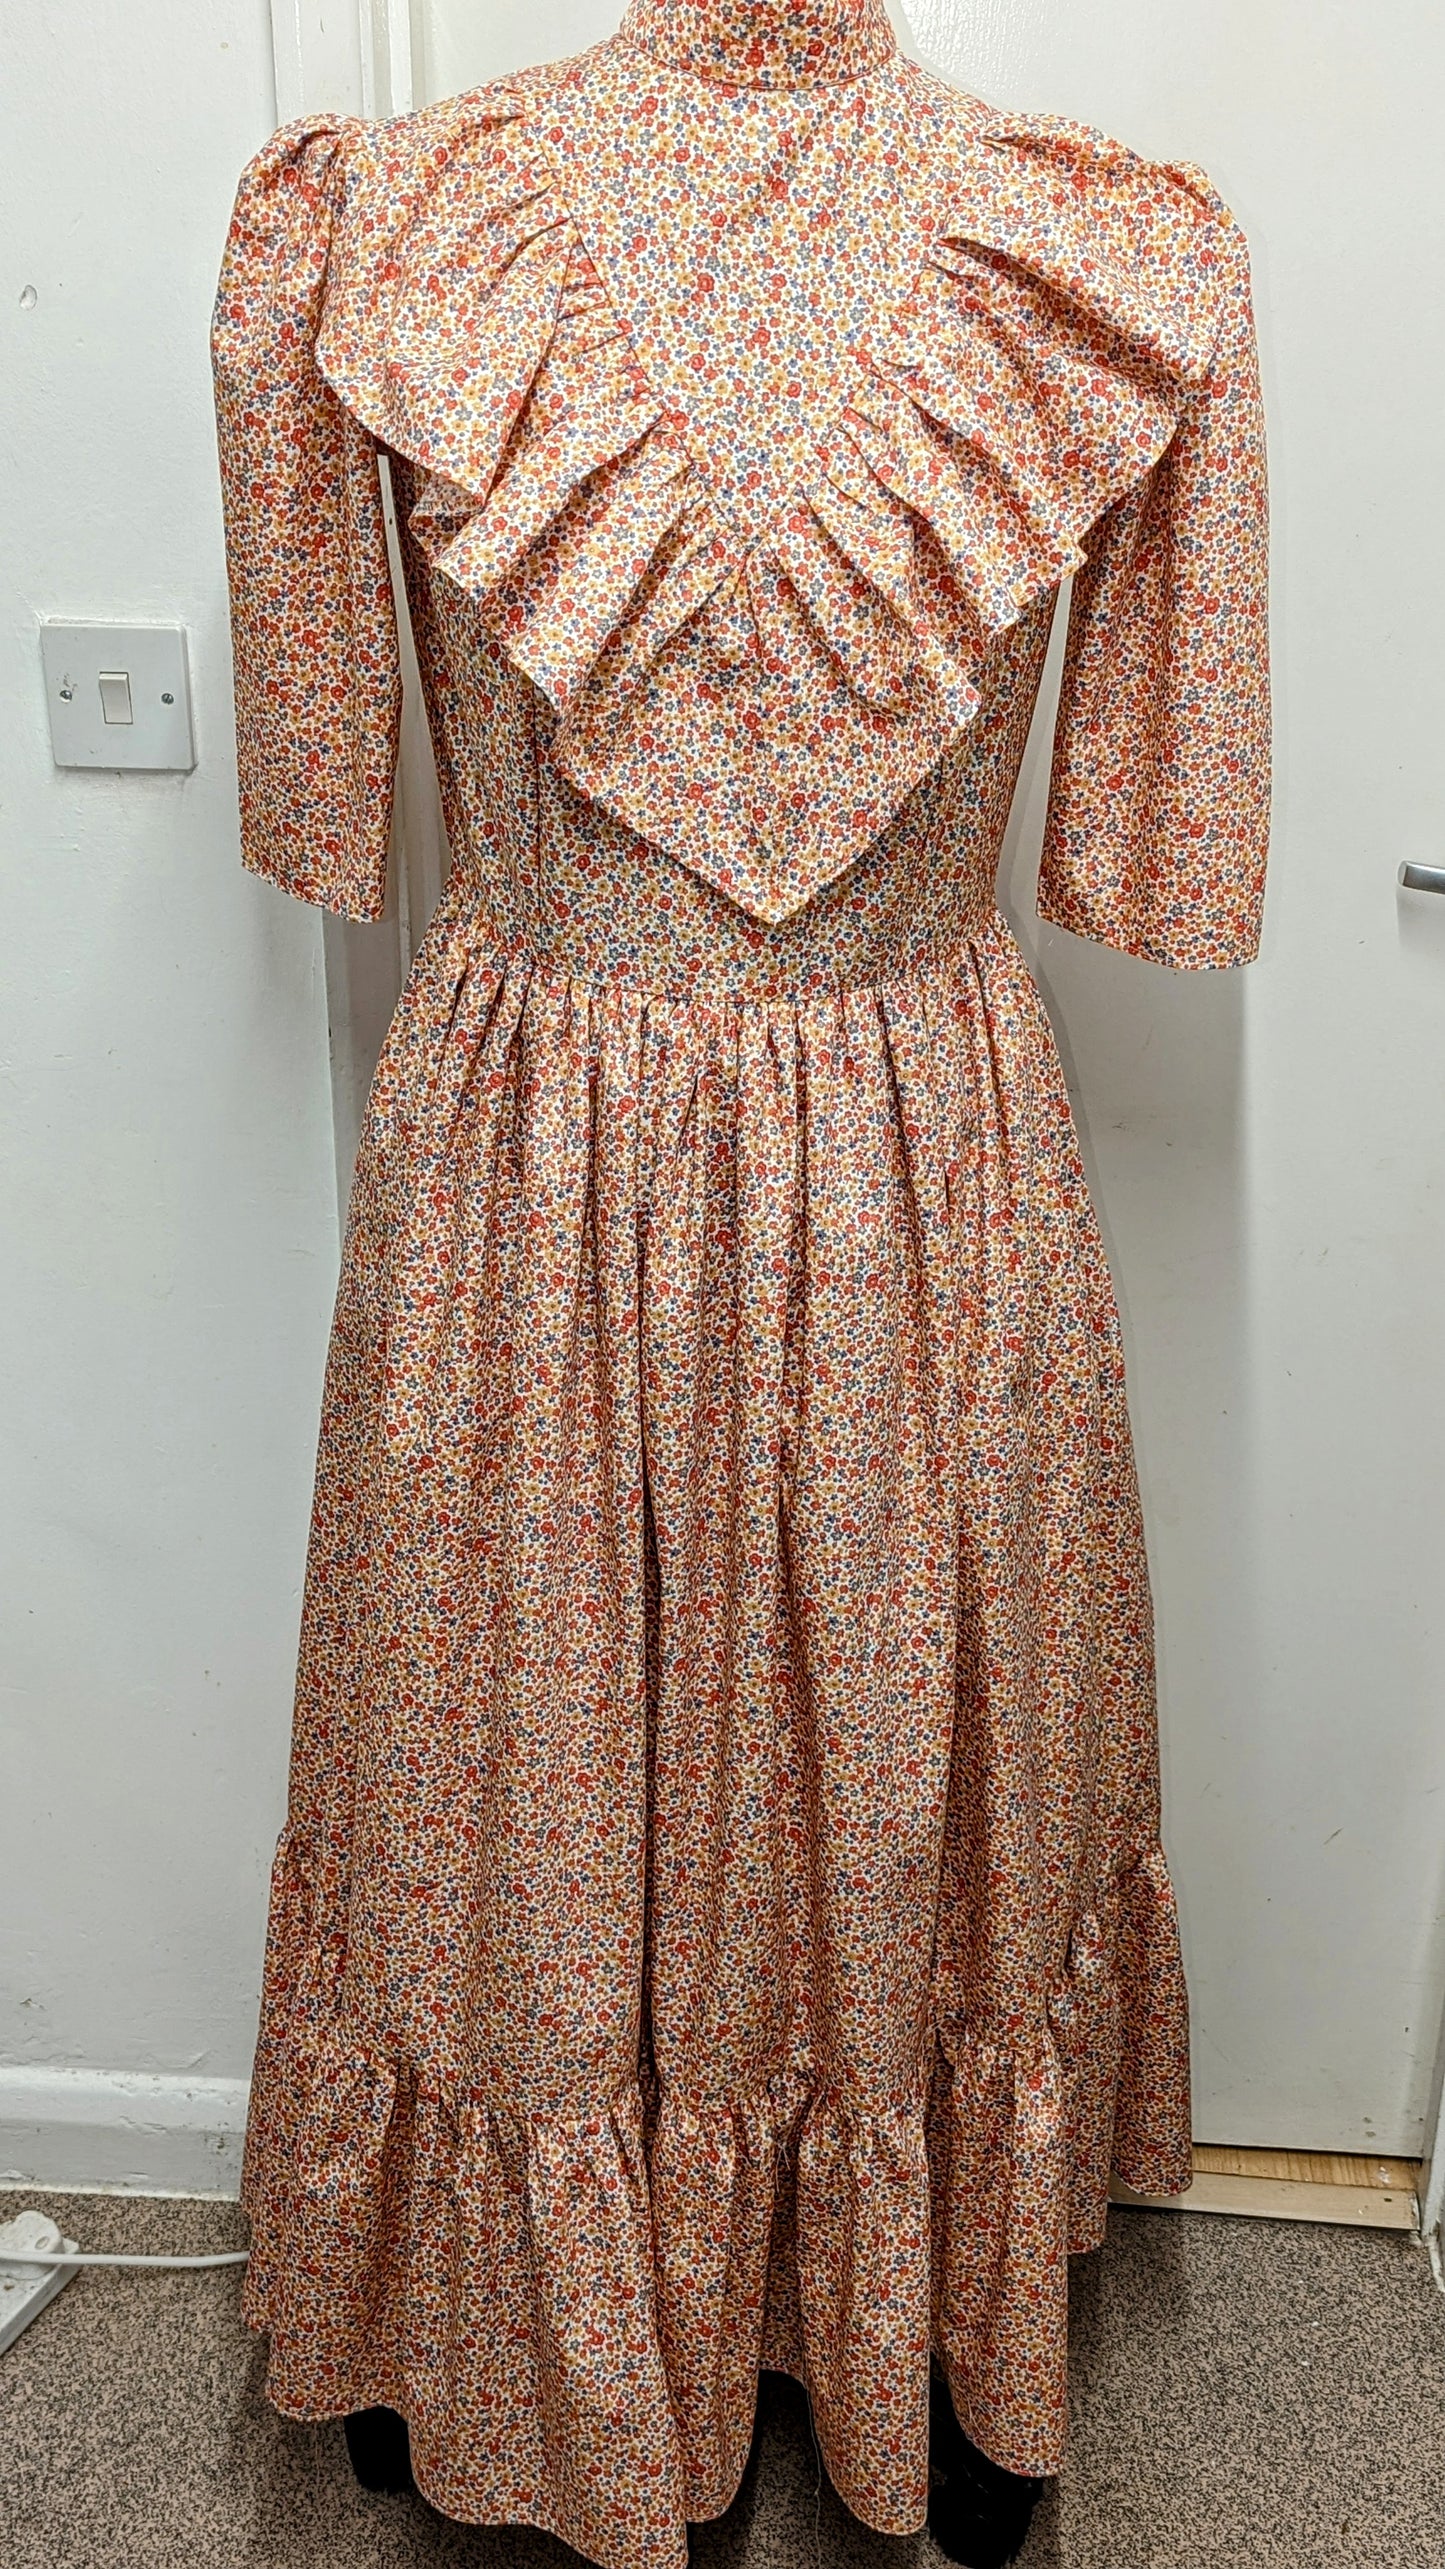 Emmeline, Victorian Vintage dress in pink flowers